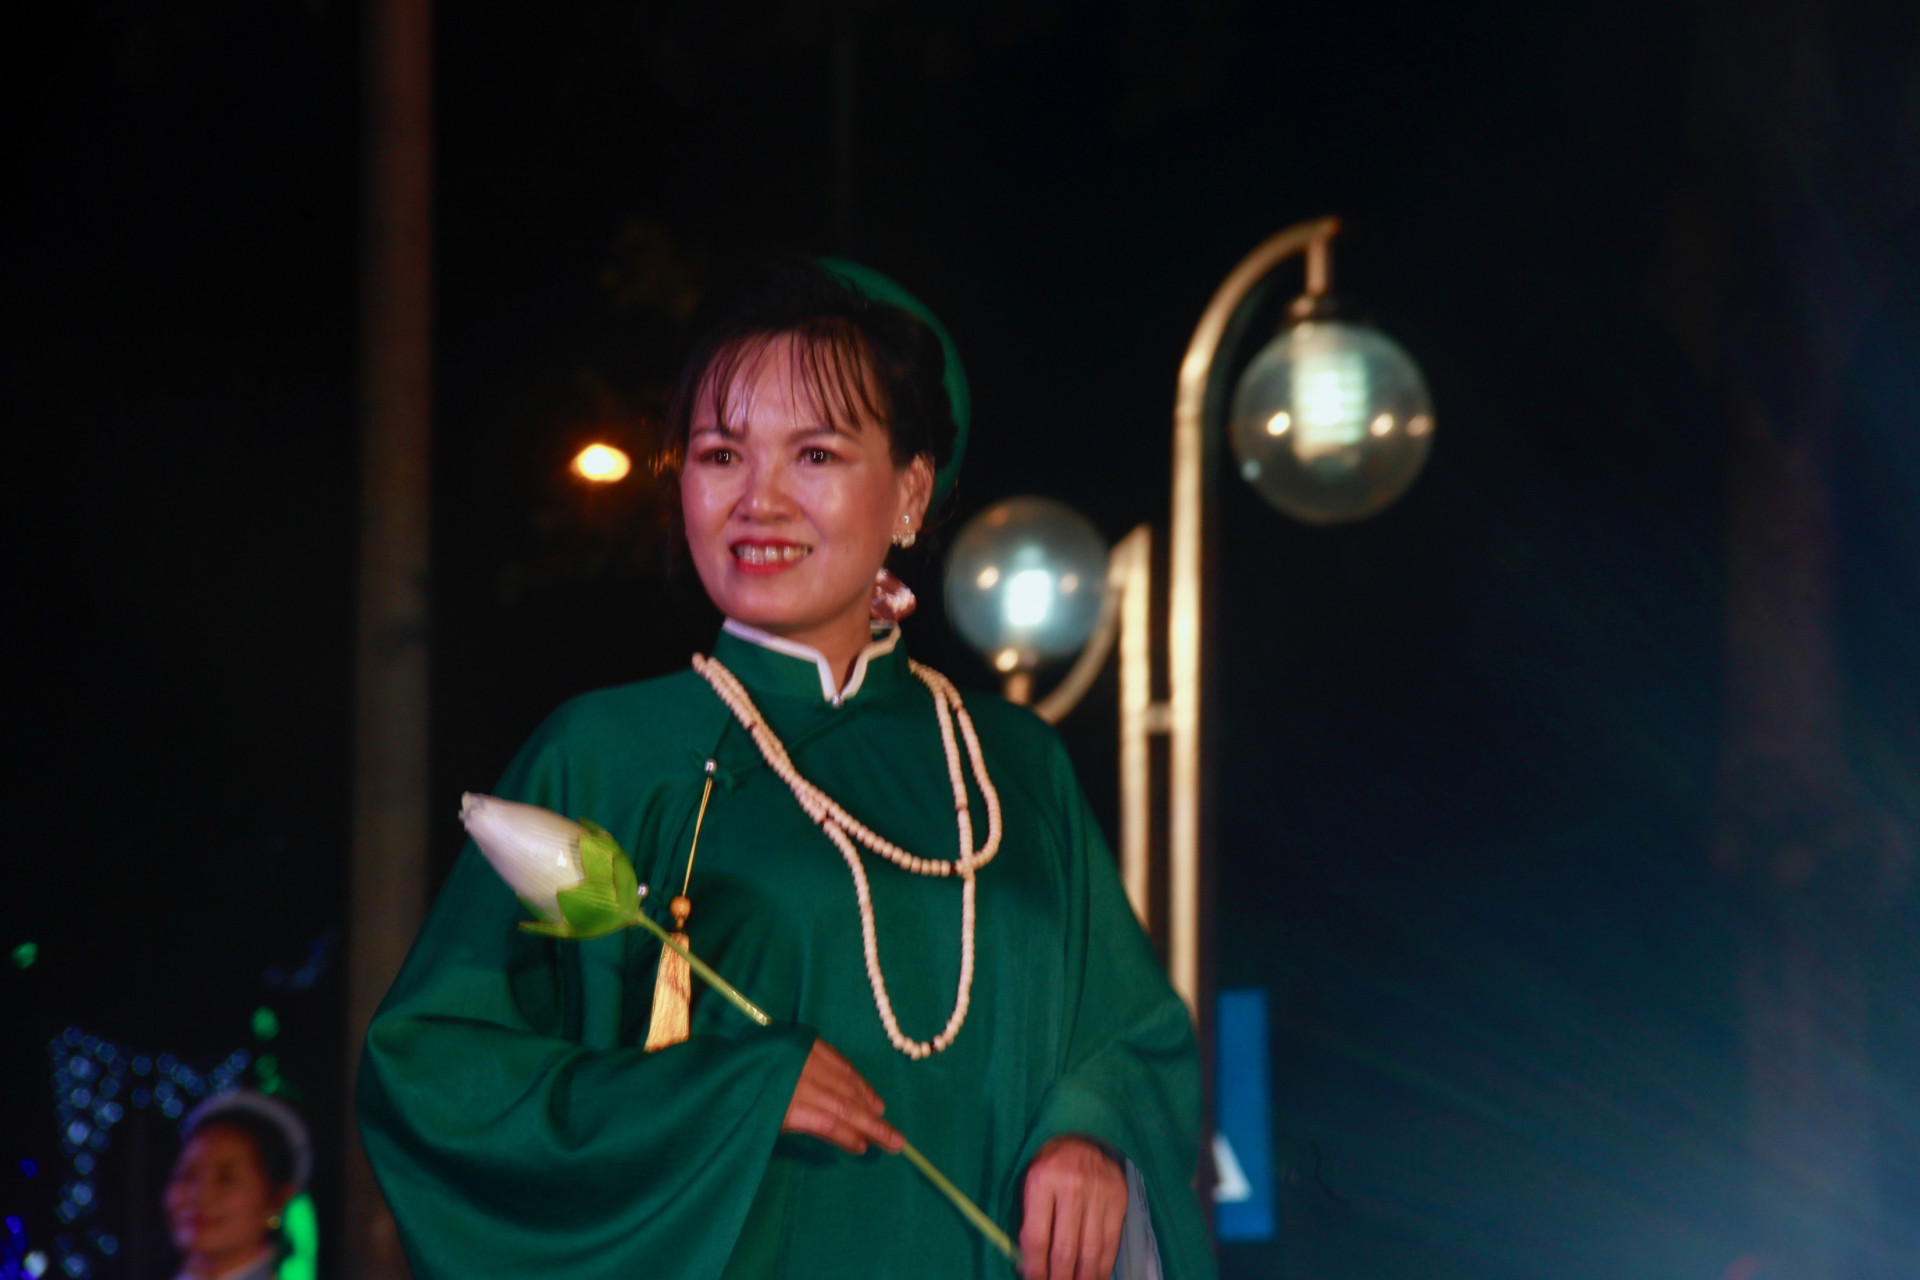 “áo dài” - Quốc phục của người Việt Nam, mang trong đó bản sắc văn hóa, hương vị dân tộc,